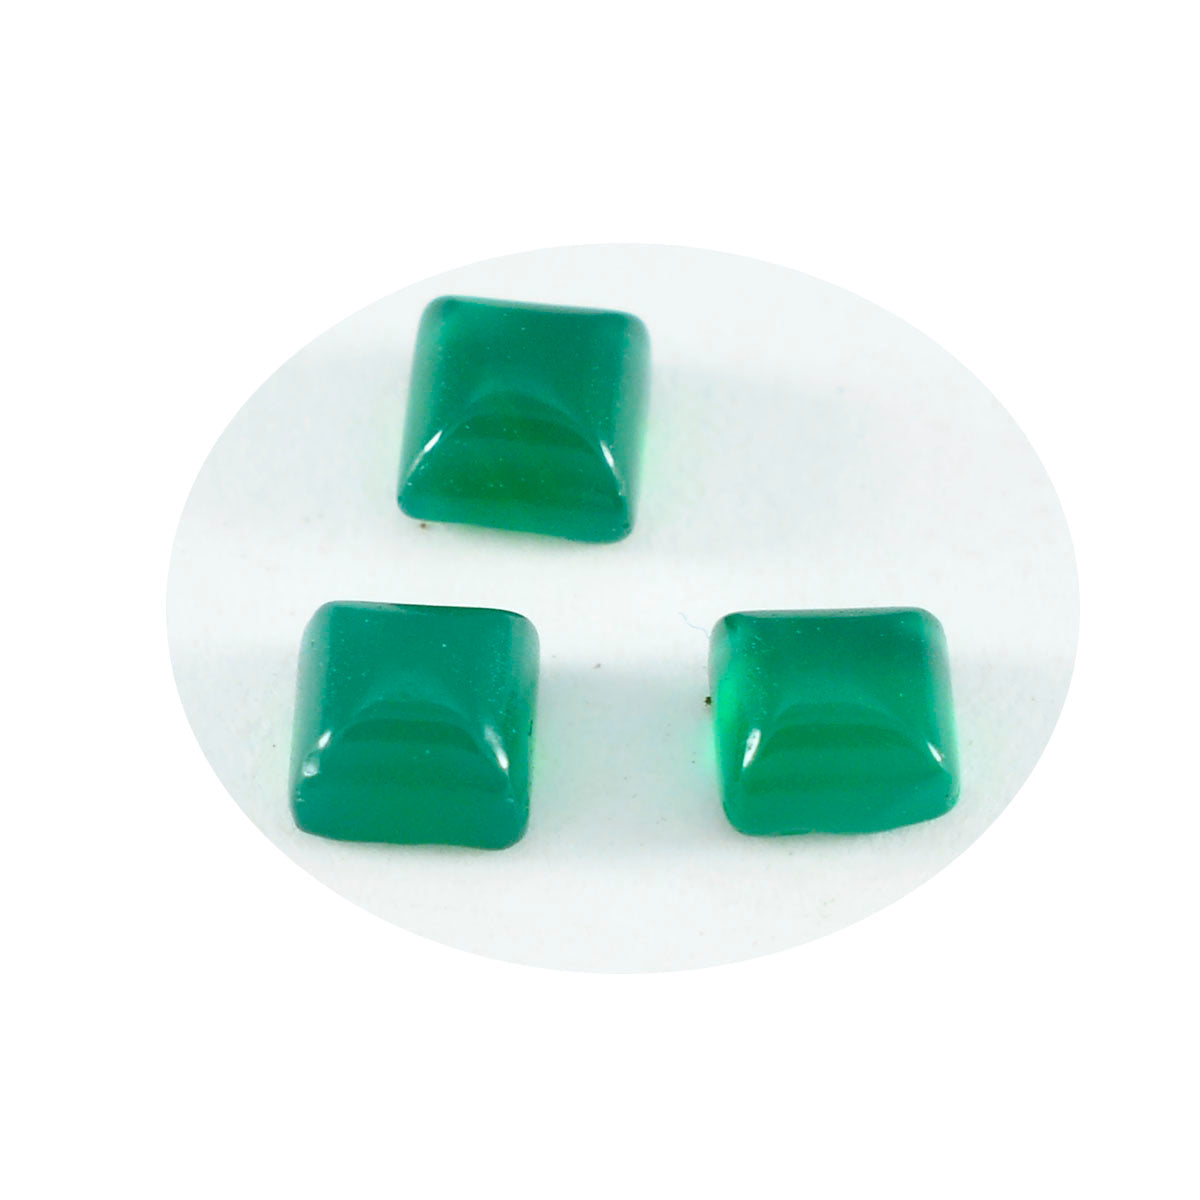 Riyogems 1PC Green Onyx Cabochon 7x7 mm Square Shape Nice Quality Loose Stone